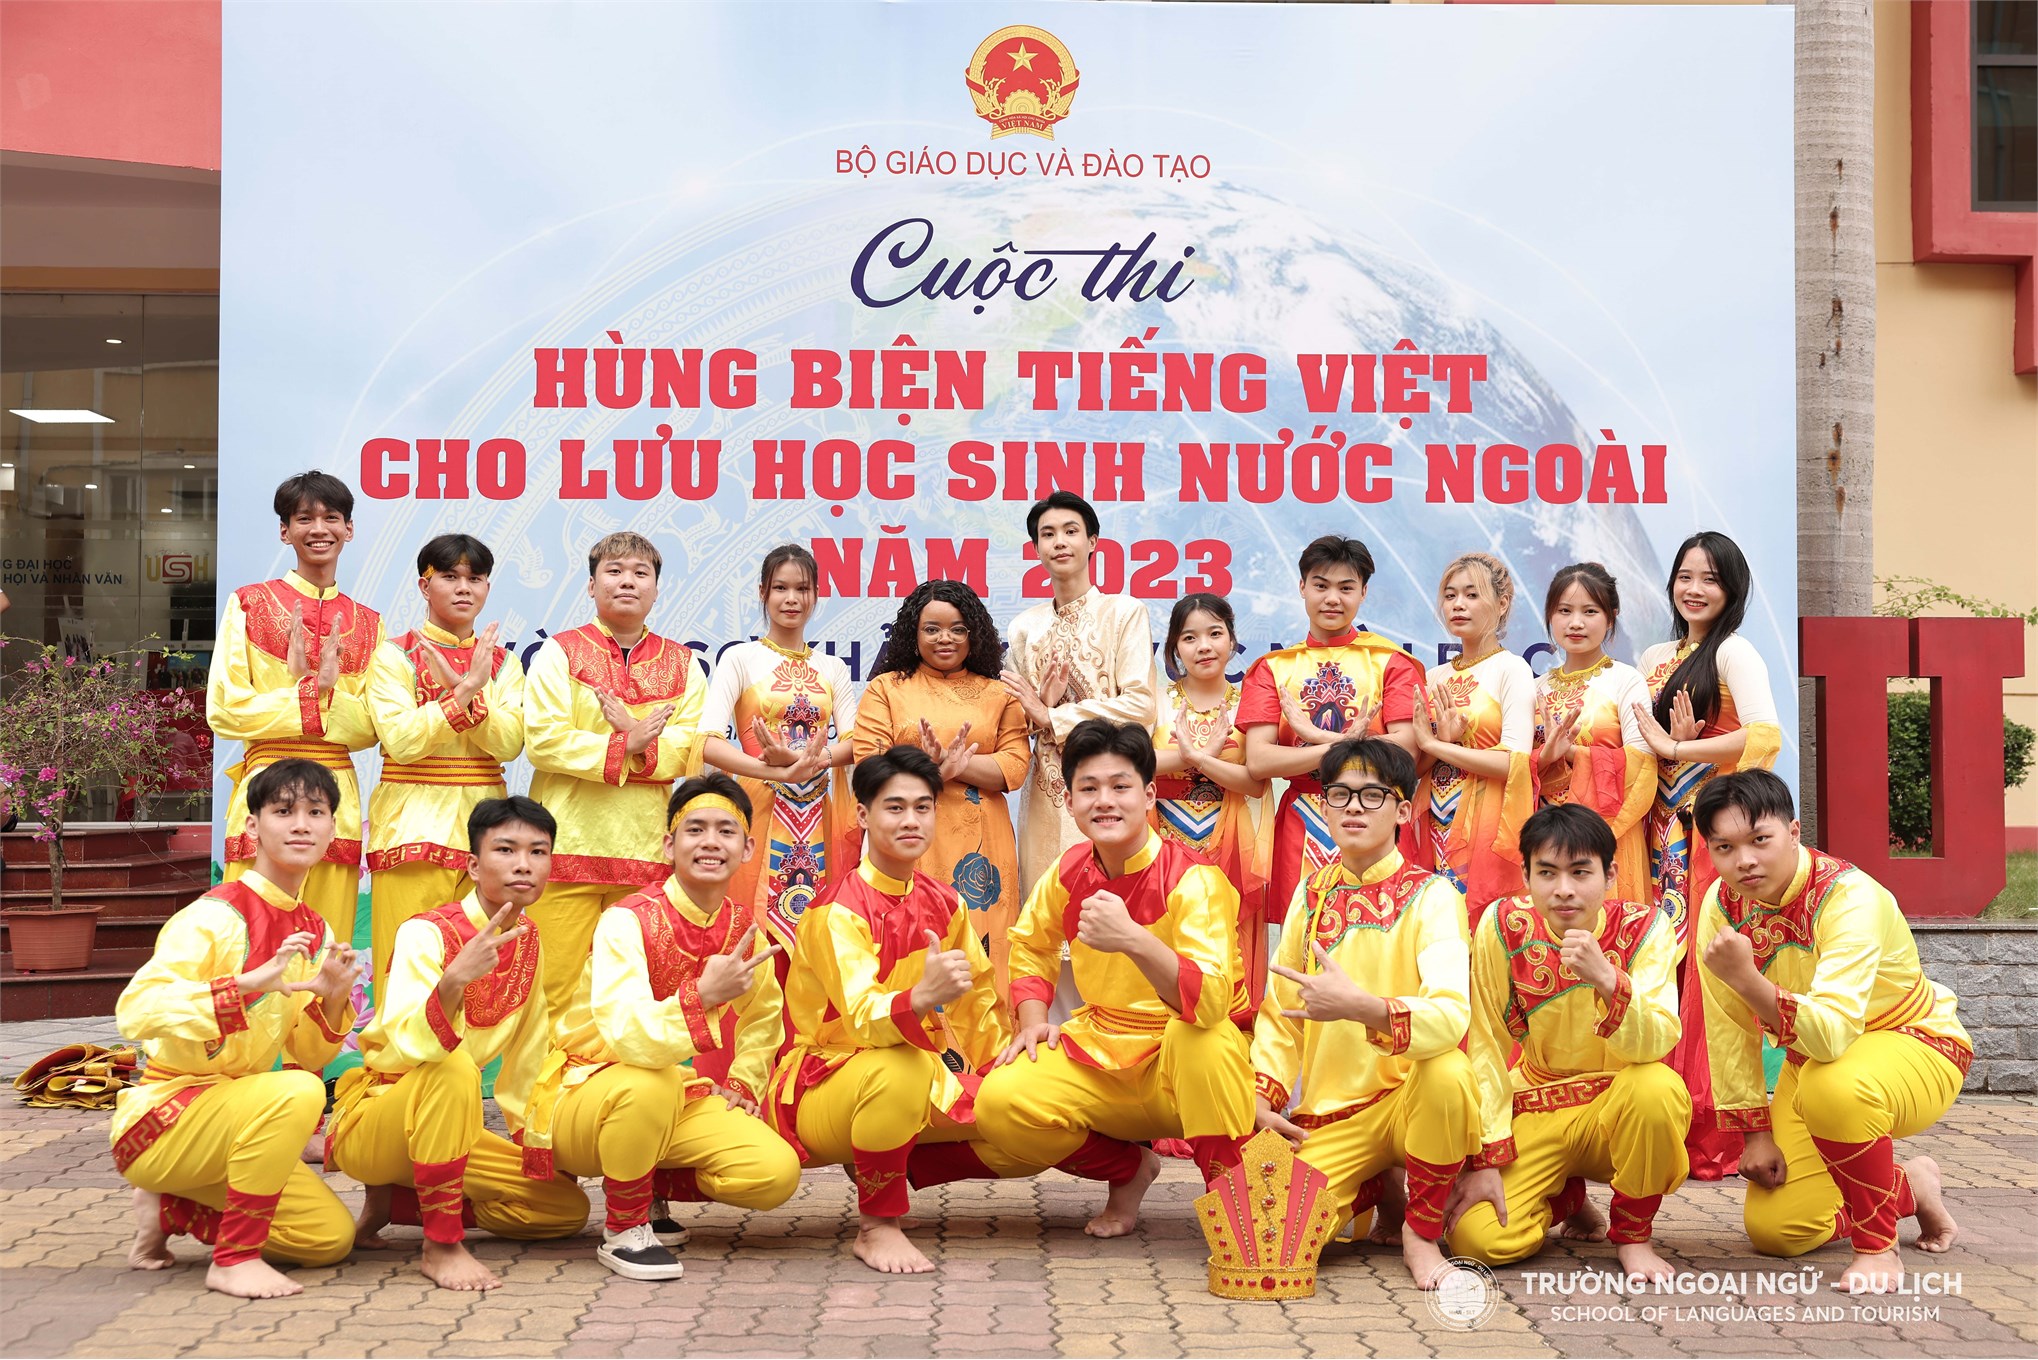 Cuộc thi Hùng biện tiếng Việt cho lưu học sinh nước ngoài năm 2023